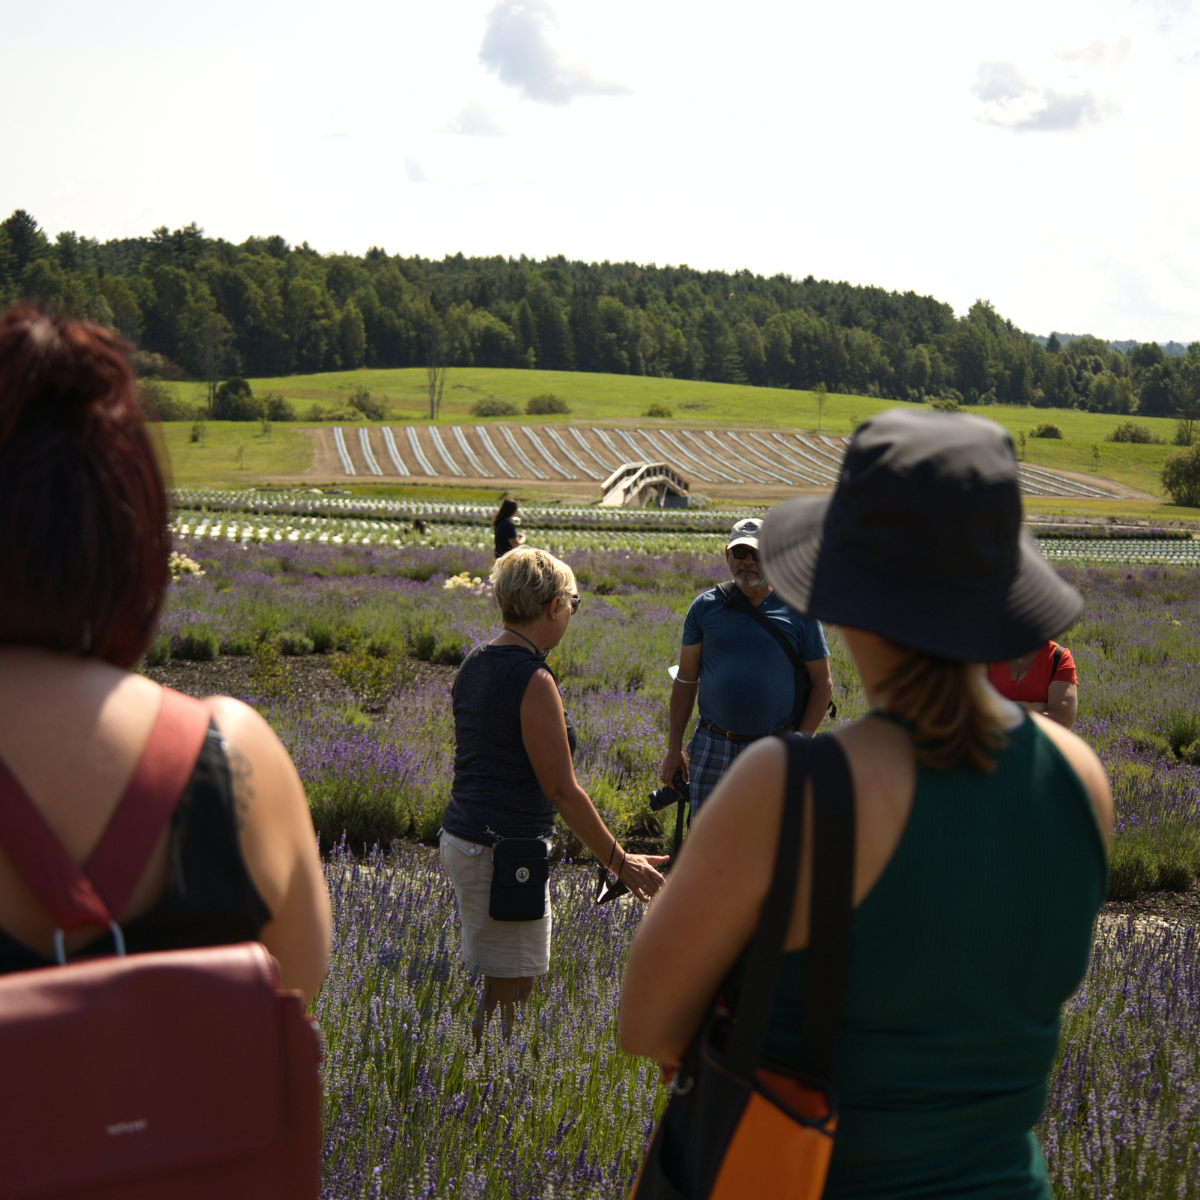 Visite guidée dans les champs de lavande | Group visit in lavender fields near Montreal